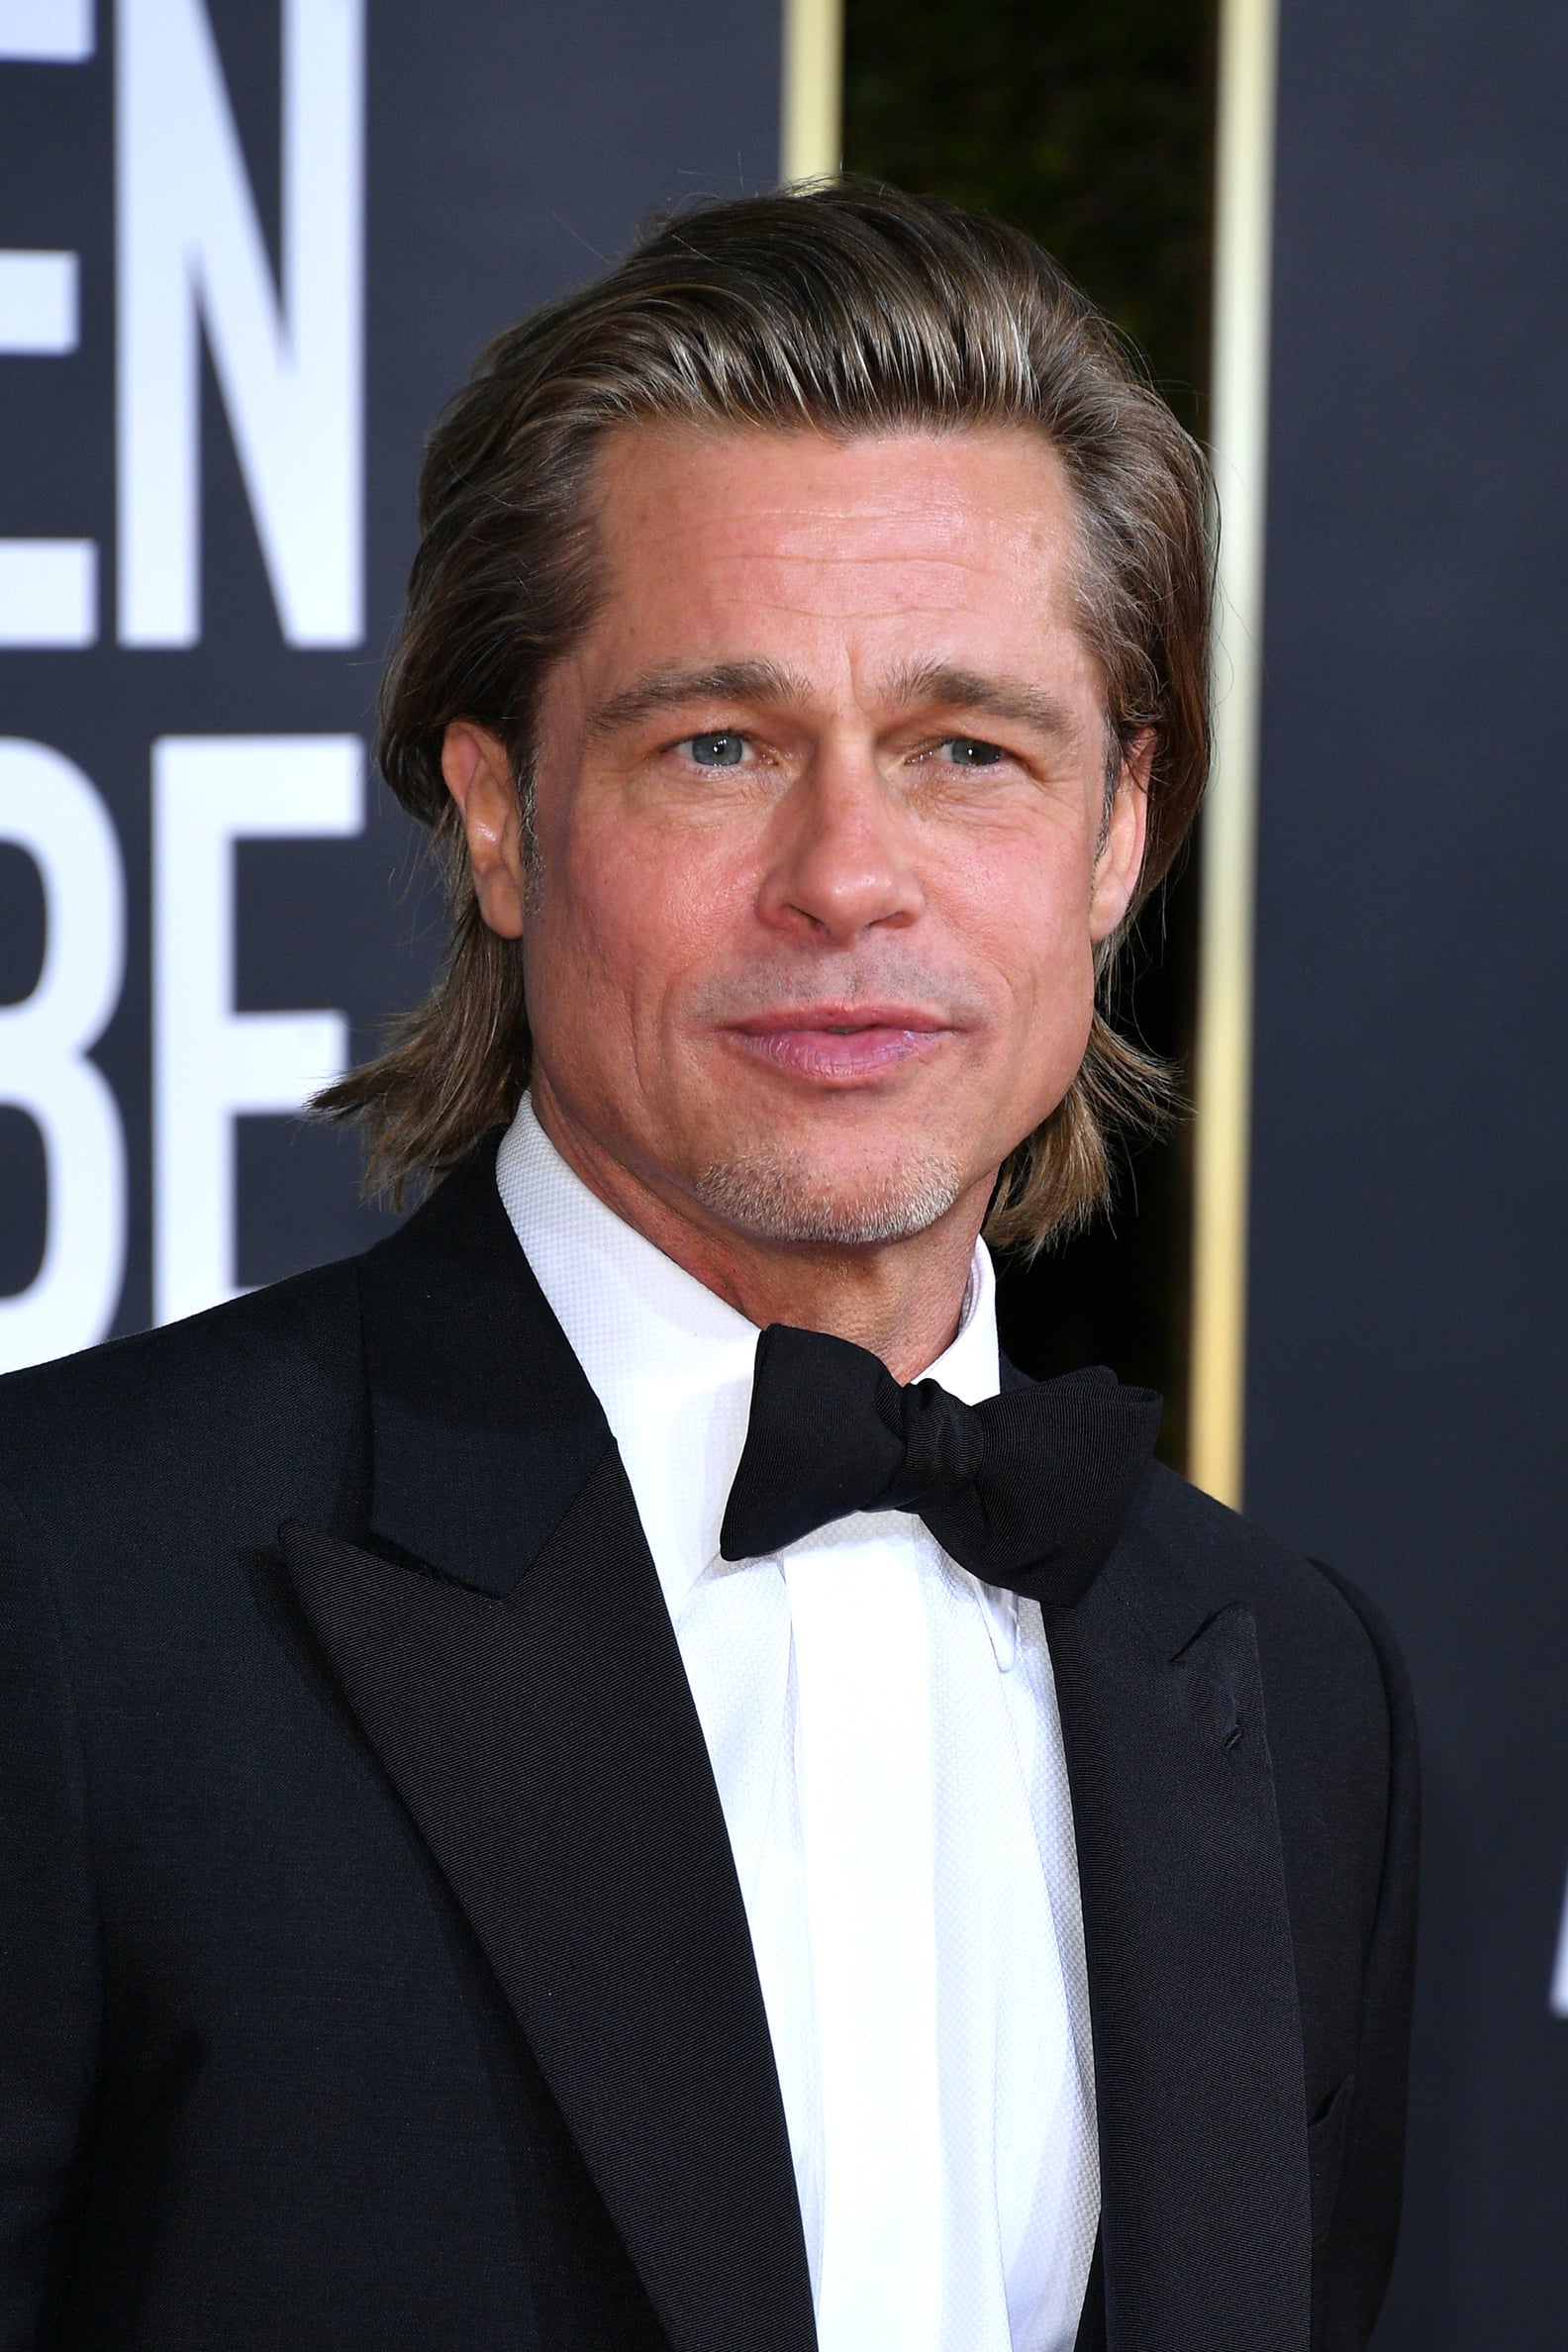 Brad Pitt's Speech at the Golden Globes 2020 Video | POPSUGAR Entertainment